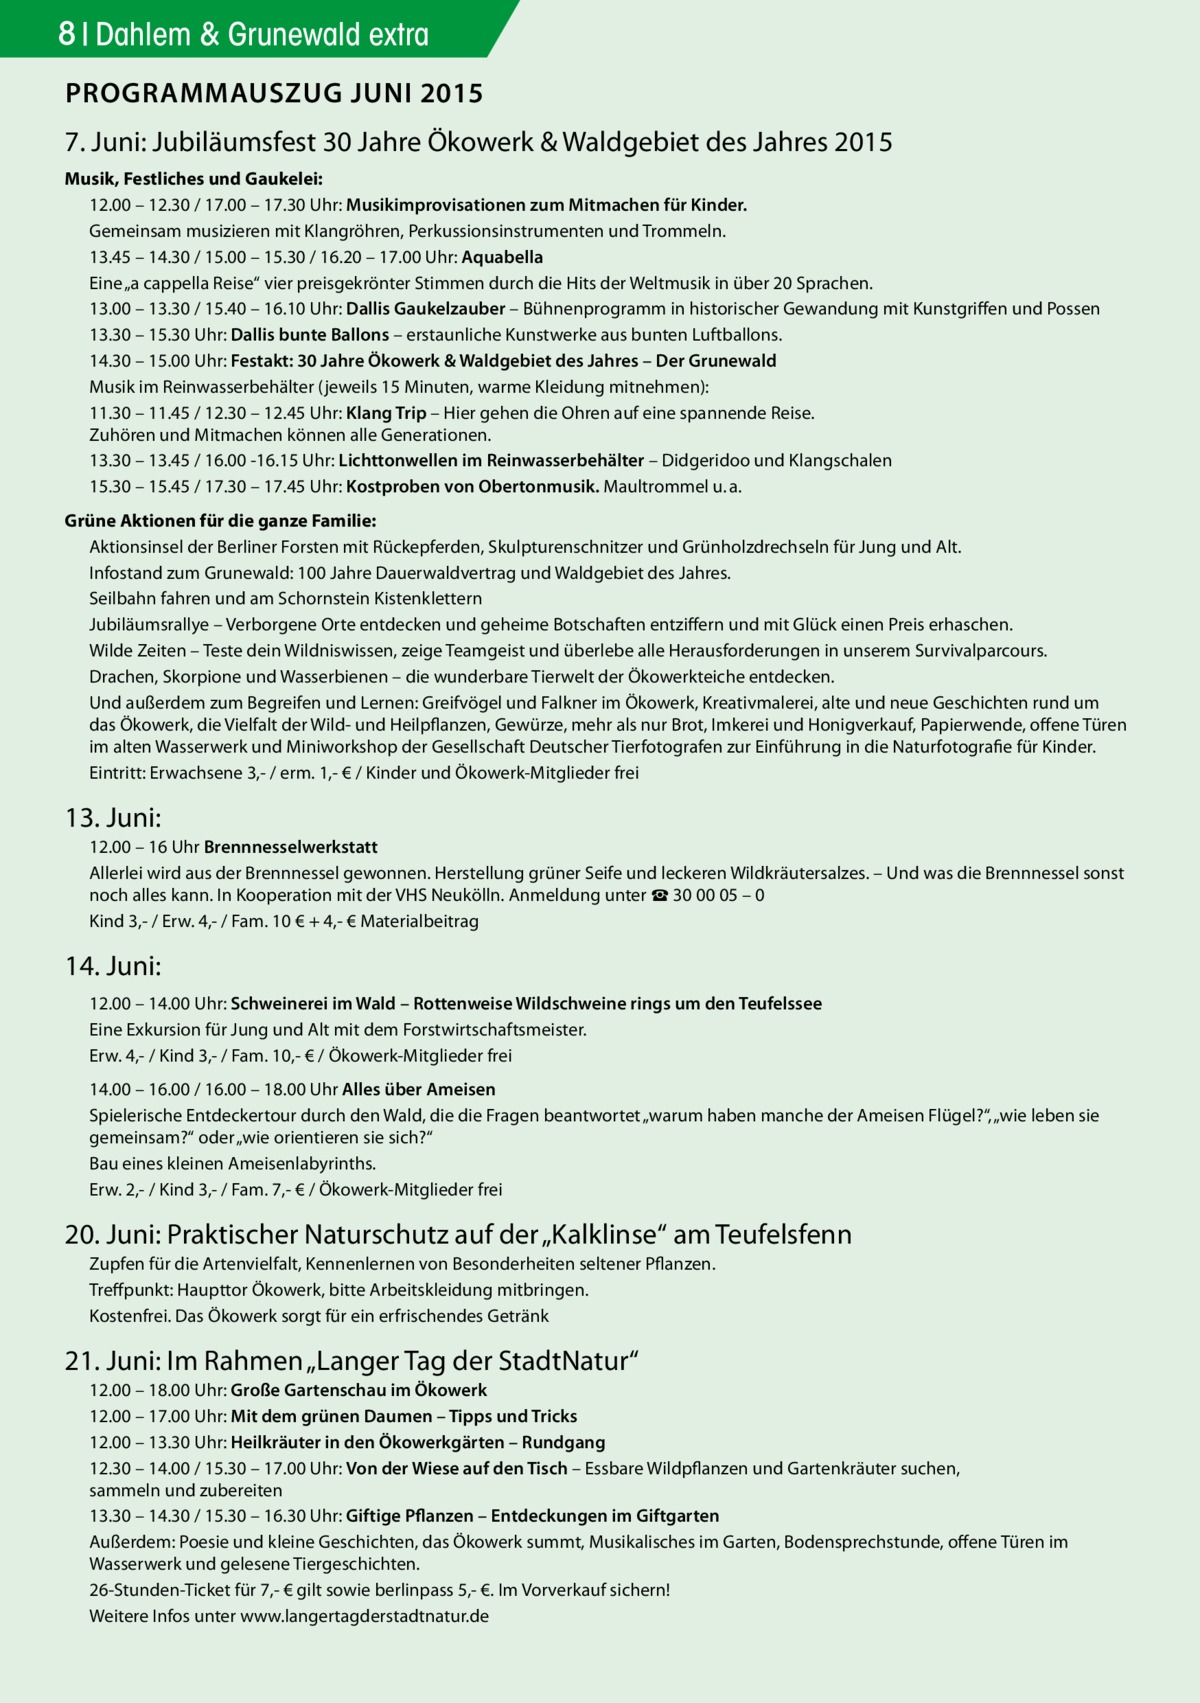 8 Dahlem & Grunewald extra PROGRAMMAUSZUG JUNI 2015 7. Juni: Jubiläumsfest 30 Jahre Ökowerk & Waldgebiet des Jahres 2015 Musik, Festliches und Gaukelei: 12.00 – 12.30 / 17.00 – 17.30 Uhr: Musikimprovisationen zum Mitmachen für Kinder. Gemeinsam musizieren mit Klangröhren, Perkussionsinstrumenten und Trommeln. 13.45 – 14.30 / 15.00 – 15.30 / 16.20 – 17.00 Uhr: Aquabella Eine „a cappella Reise“ vier preisgekrönter Stimmen durch die Hits der Weltmusik in über 20 Sprachen. 13.00 – 13.30 / 15.40 – 16.10 Uhr: Dallis Gaukelzauber – Bühnenprogramm in historischer Gewandung mit Kunstgriffen und Possen 13.30 – 15.30 Uhr: Dallis bunte Ballons – erstaunliche Kunstwerke aus bunten Luftballons. 14.30 – 15.00 Uhr: Festakt: 30 Jahre Ökowerk & Waldgebiet des Jahres – Der Grunewald Musik im Reinwasserbehälter (jeweils 15 Minuten, warme Kleidung mitnehmen): 11.30 – 11.45 / 12.30 – 12.45 Uhr: Klang Trip – Hier gehen die Ohren auf eine spannende Reise. Zuhören und Mitmachen können alle Generationen. 13.30 – 13.45 / 16.00 -16.15 Uhr: Lichttonwellen im Reinwasserbehälter – Didgeridoo und Klangschalen 15.30 – 15.45 / 17.30 – 17.45 Uhr: Kostproben von Obertonmusik. Maultrommel u. a. Grüne Aktionen für die ganze Familie: Aktionsinsel der Berliner Forsten mit Rückepferden, Skulpturenschnitzer und Grünholzdrechseln für Jung und Alt. Infostand zum Grunewald: 100 Jahre Dauerwaldvertrag und Waldgebiet des Jahres. Seilbahn fahren und am Schornstein Kistenklettern Jubiläumsrallye – Verborgene Orte entdecken und geheime Botschaften entziffern und mit Glück einen Preis erhaschen. Wilde Zeiten – Teste dein Wildniswissen, zeige Teamgeist und überlebe alle Herausforderungen in unserem Survivalparcours. Drachen, Skorpione und Wasserbienen – die wunderbare Tierwelt der Ökowerkteiche entdecken. Und außerdem zum Begreifen und Lernen: Greifvögel und Falkner im Ökowerk, Kreativmalerei, alte und neue Geschichten rund um das Ökowerk, die Vielfalt der Wild- und Heilpflanzen, Gewürze, mehr als nur Brot, Imkerei und Honigverkauf, Papierwende, offene Türen im alten Wasserwerk und Miniworkshop der Gesellschaft Deutscher Tierfotografen zur Einführung in die Naturfotografie für Kinder. Eintritt: Erwachsene 3,- / erm. 1,- € / Kinder und Ökowerk-Mitglieder frei  13. Juni: 12.00 – 16 Uhr Brennnesselwerkstatt Allerlei wird aus der Brennnessel gewonnen. Herstellung grüner Seife und leckeren Wildkräutersalzes. – Und was die Brennnessel sonst noch alles kann. In Kooperation mit der VHS Neukölln. Anmeldung unter ☎ 30 00 05 – 0 Kind 3,- / Erw. 4,- / Fam. 10 € + 4,- € Materialbeitrag  14. Juni: 12.00 – 14.00 Uhr: Schweinerei im Wald – Rottenweise Wildschweine rings um den Teufelssee Eine Exkursion für Jung und Alt mit dem Forstwirtschaftsmeister. Erw. 4,- / Kind 3,- / Fam. 10,- € / Ökowerk-Mitglieder frei	 14.00 – 16.00 / 16.00 – 18.00 Uhr Alles über Ameisen Spielerische Entdeckertour durch den Wald, die die Fragen beantwortet „warum haben manche der Ameisen Flügel?“, „wie leben sie gemeinsam?“ oder „wie orientieren sie sich?“ Bau eines kleinen Ameisenlabyrinths. Erw. 2,- / Kind 3,- / Fam. 7,- € / Ökowerk-Mitglieder frei  20. Juni: Praktischer Naturschutz auf der „Kalklinse“ am Teufelsfenn Zupfen für die Artenvielfalt, Kennenlernen von Besonderheiten seltener Pflanzen. Treffpunkt: Haupttor Ökowerk, bitte Arbeitskleidung mitbringen. Kostenfrei. Das Ökowerk sorgt für ein erfrischendes Getränk  21. Juni: Im Rahmen „Langer Tag der StadtNatur“ 12.00 – 18.00 Uhr: Große Gartenschau im Ökowerk 12.00 – 17.00 Uhr: Mit dem grünen Daumen – Tipps und Tricks 12.00 – 13.30 Uhr: Heilkräuter in den Ökowerkgärten – Rundgang 12.30 – 14.00 / 15.30 – 17.00 Uhr: Von der Wiese auf den Tisch – Essbare Wildpflanzen und Gartenkräuter suchen, sammeln und zubereiten 13.30 – 14.30 / 15.30 – 16.30 Uhr: Giftige Pflanzen – Entdeckungen im Giftgarten Außerdem: Poesie und kleine Geschichten, das Ökowerk summt, Musikalisches im Garten, Bodensprechstunde, offene Türen im Wasserwerk und gelesene Tiergeschichten. 26-Stunden-Ticket für 7,- € gilt sowie berlinpass 5,- €. Im Vorverkauf sichern! Weitere Infos unter www.langertagderstadtnatur.de